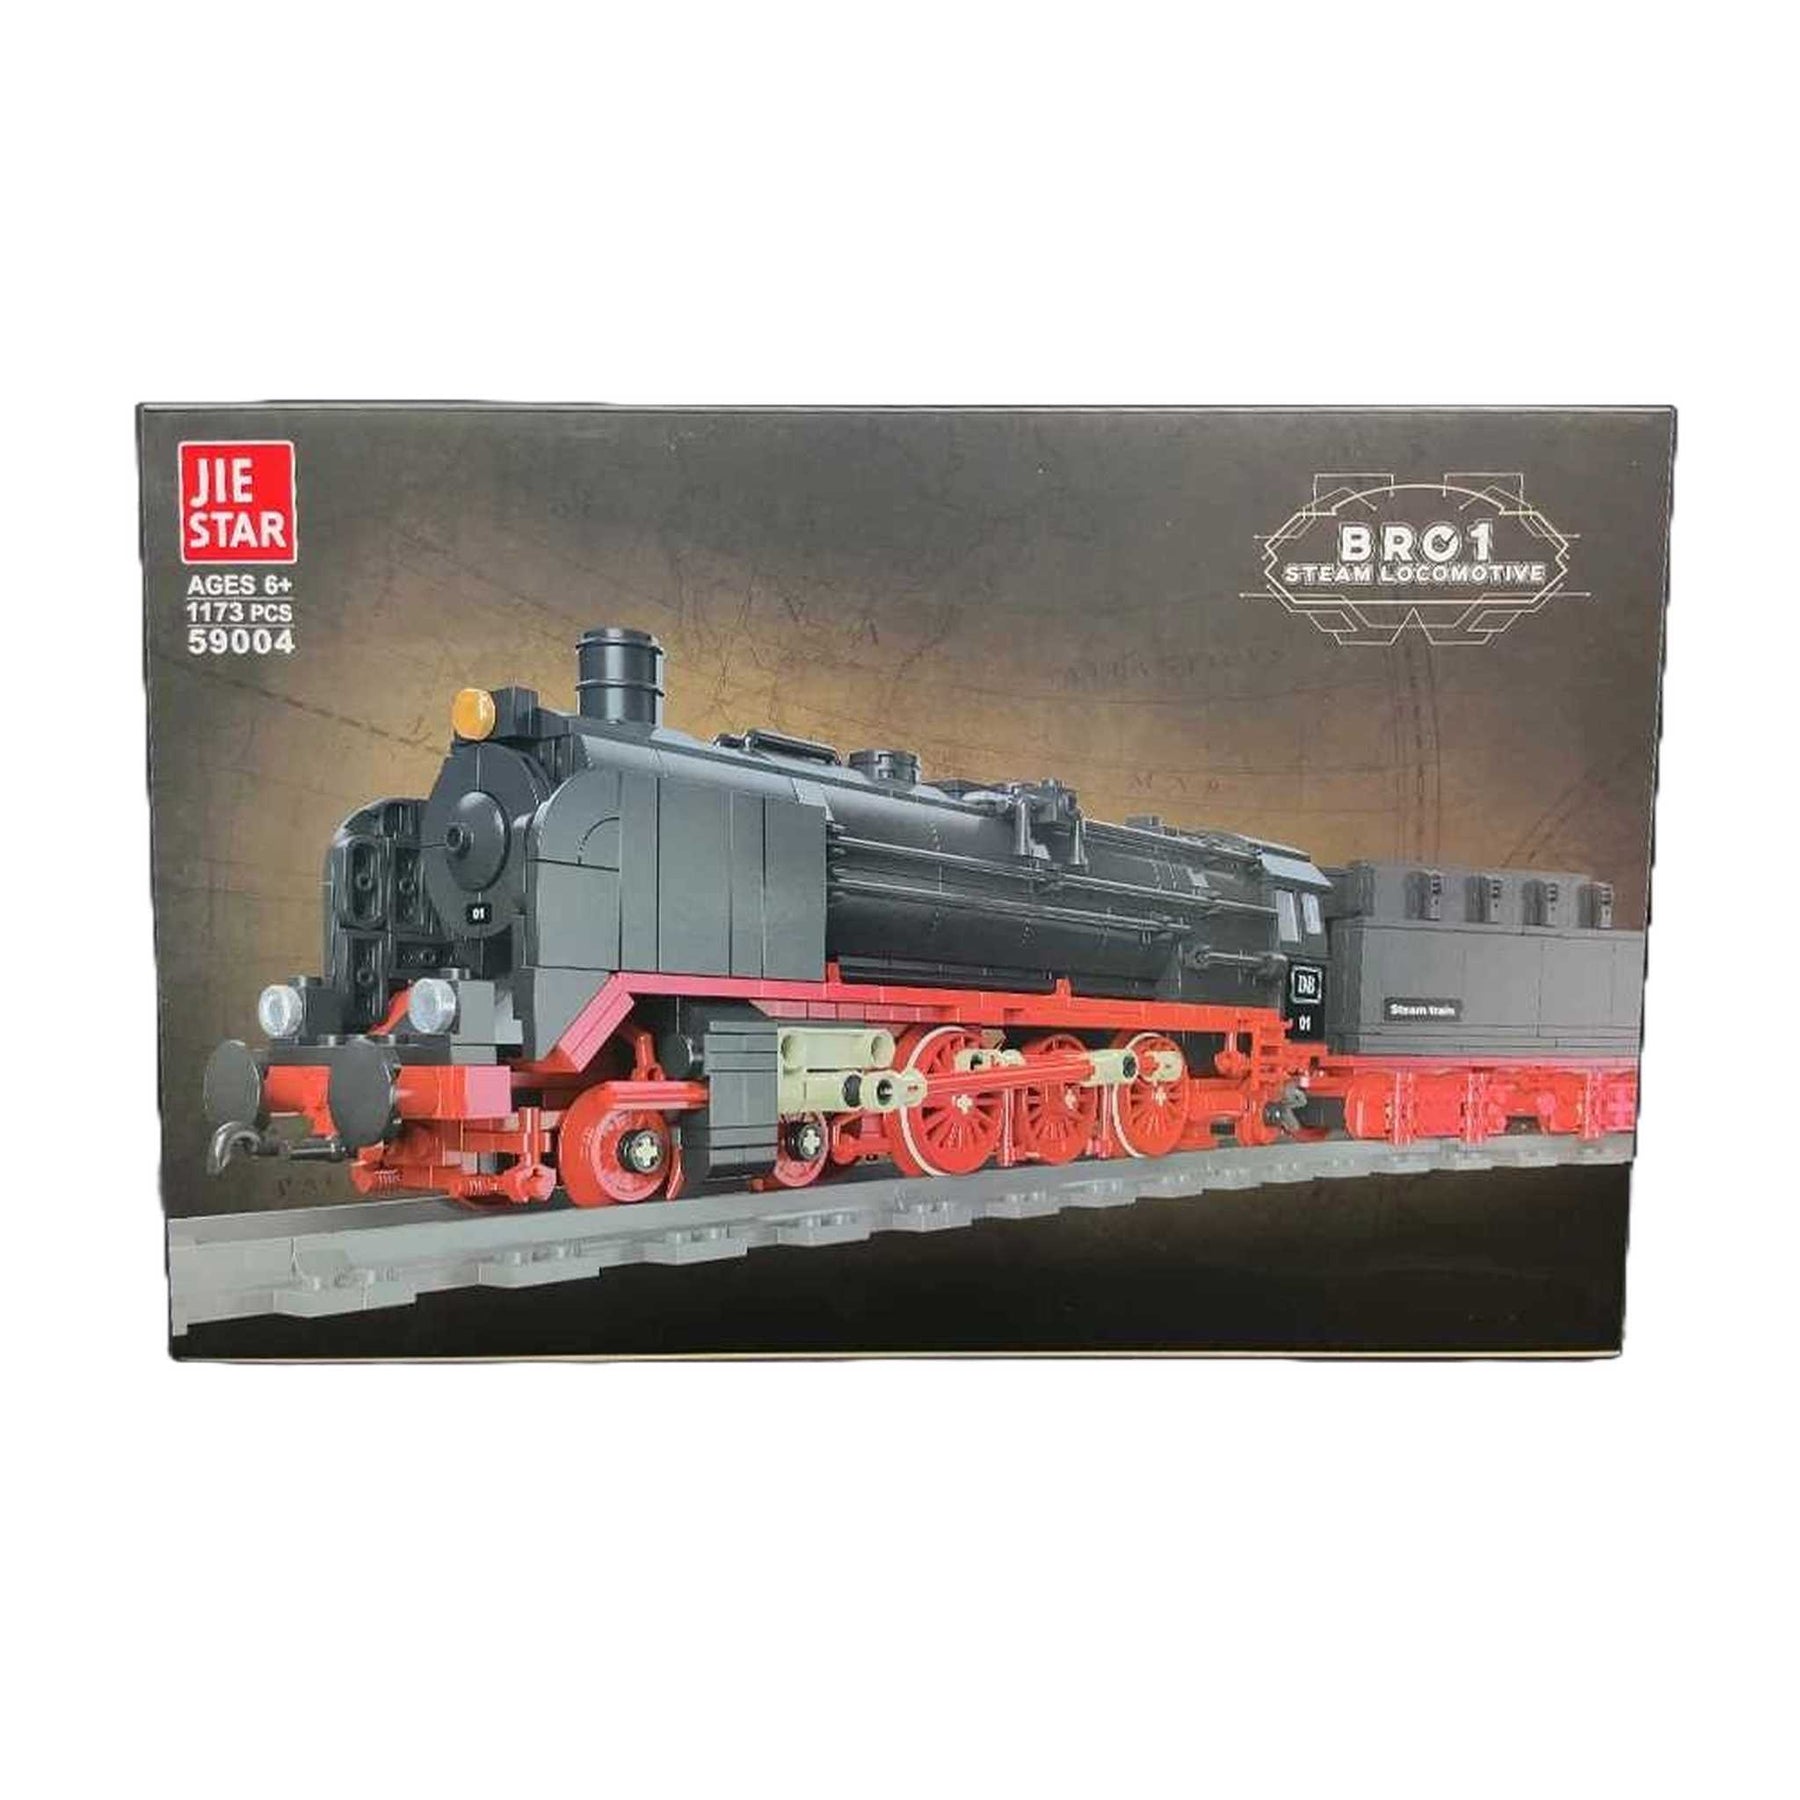 Jie Star 59004 Deutsche BR01 Dampflokomotive